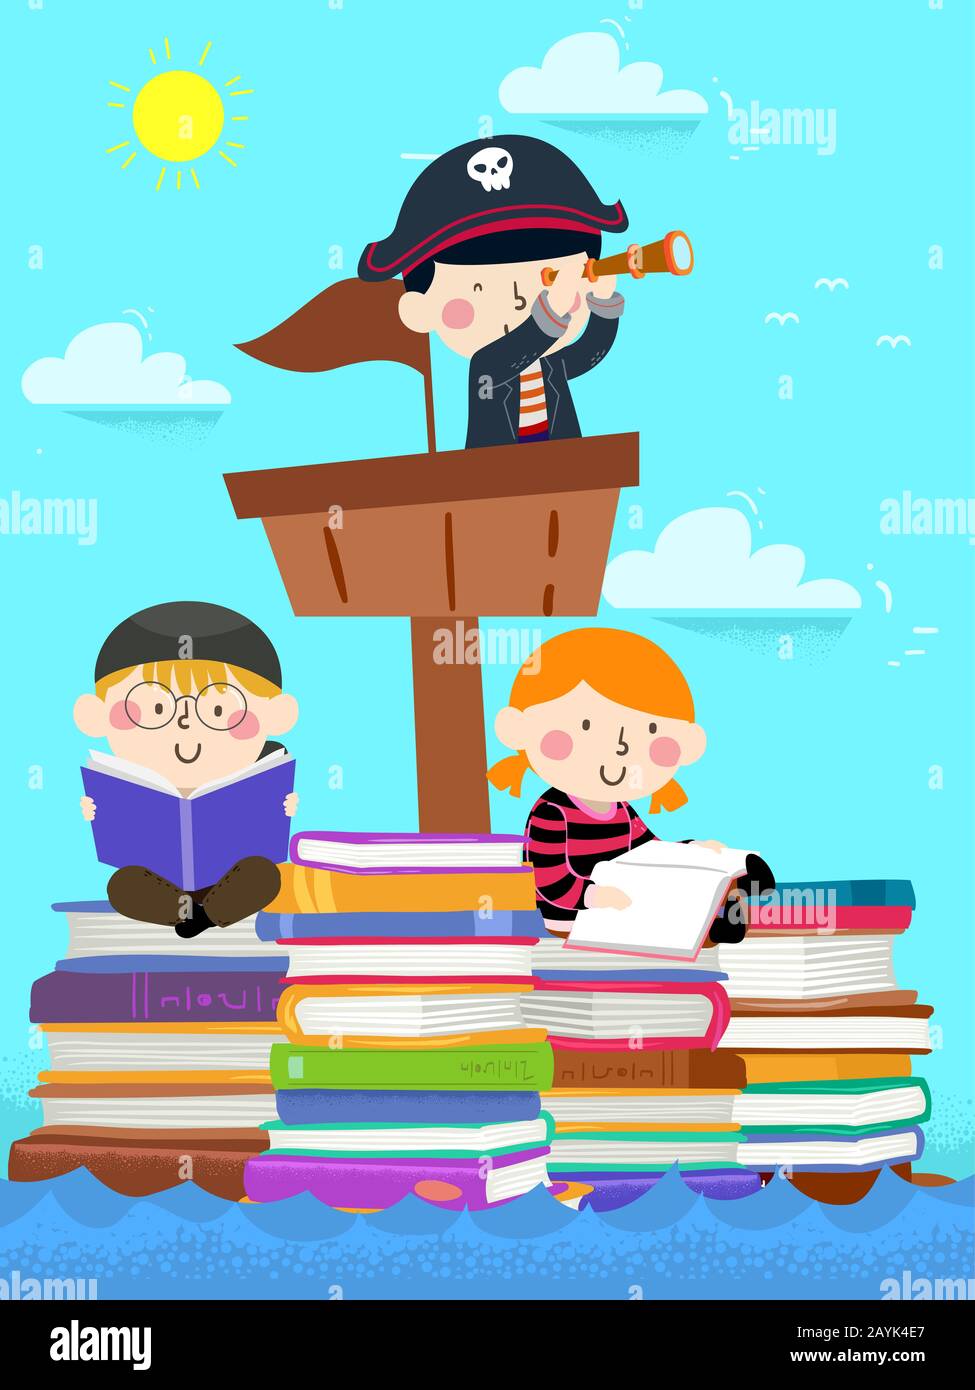 Abbildung: Kinder, Die Piraten-Kostüm-Segeln auf einem Schiff Aus Stapeln von Büchern tragen Stockfoto